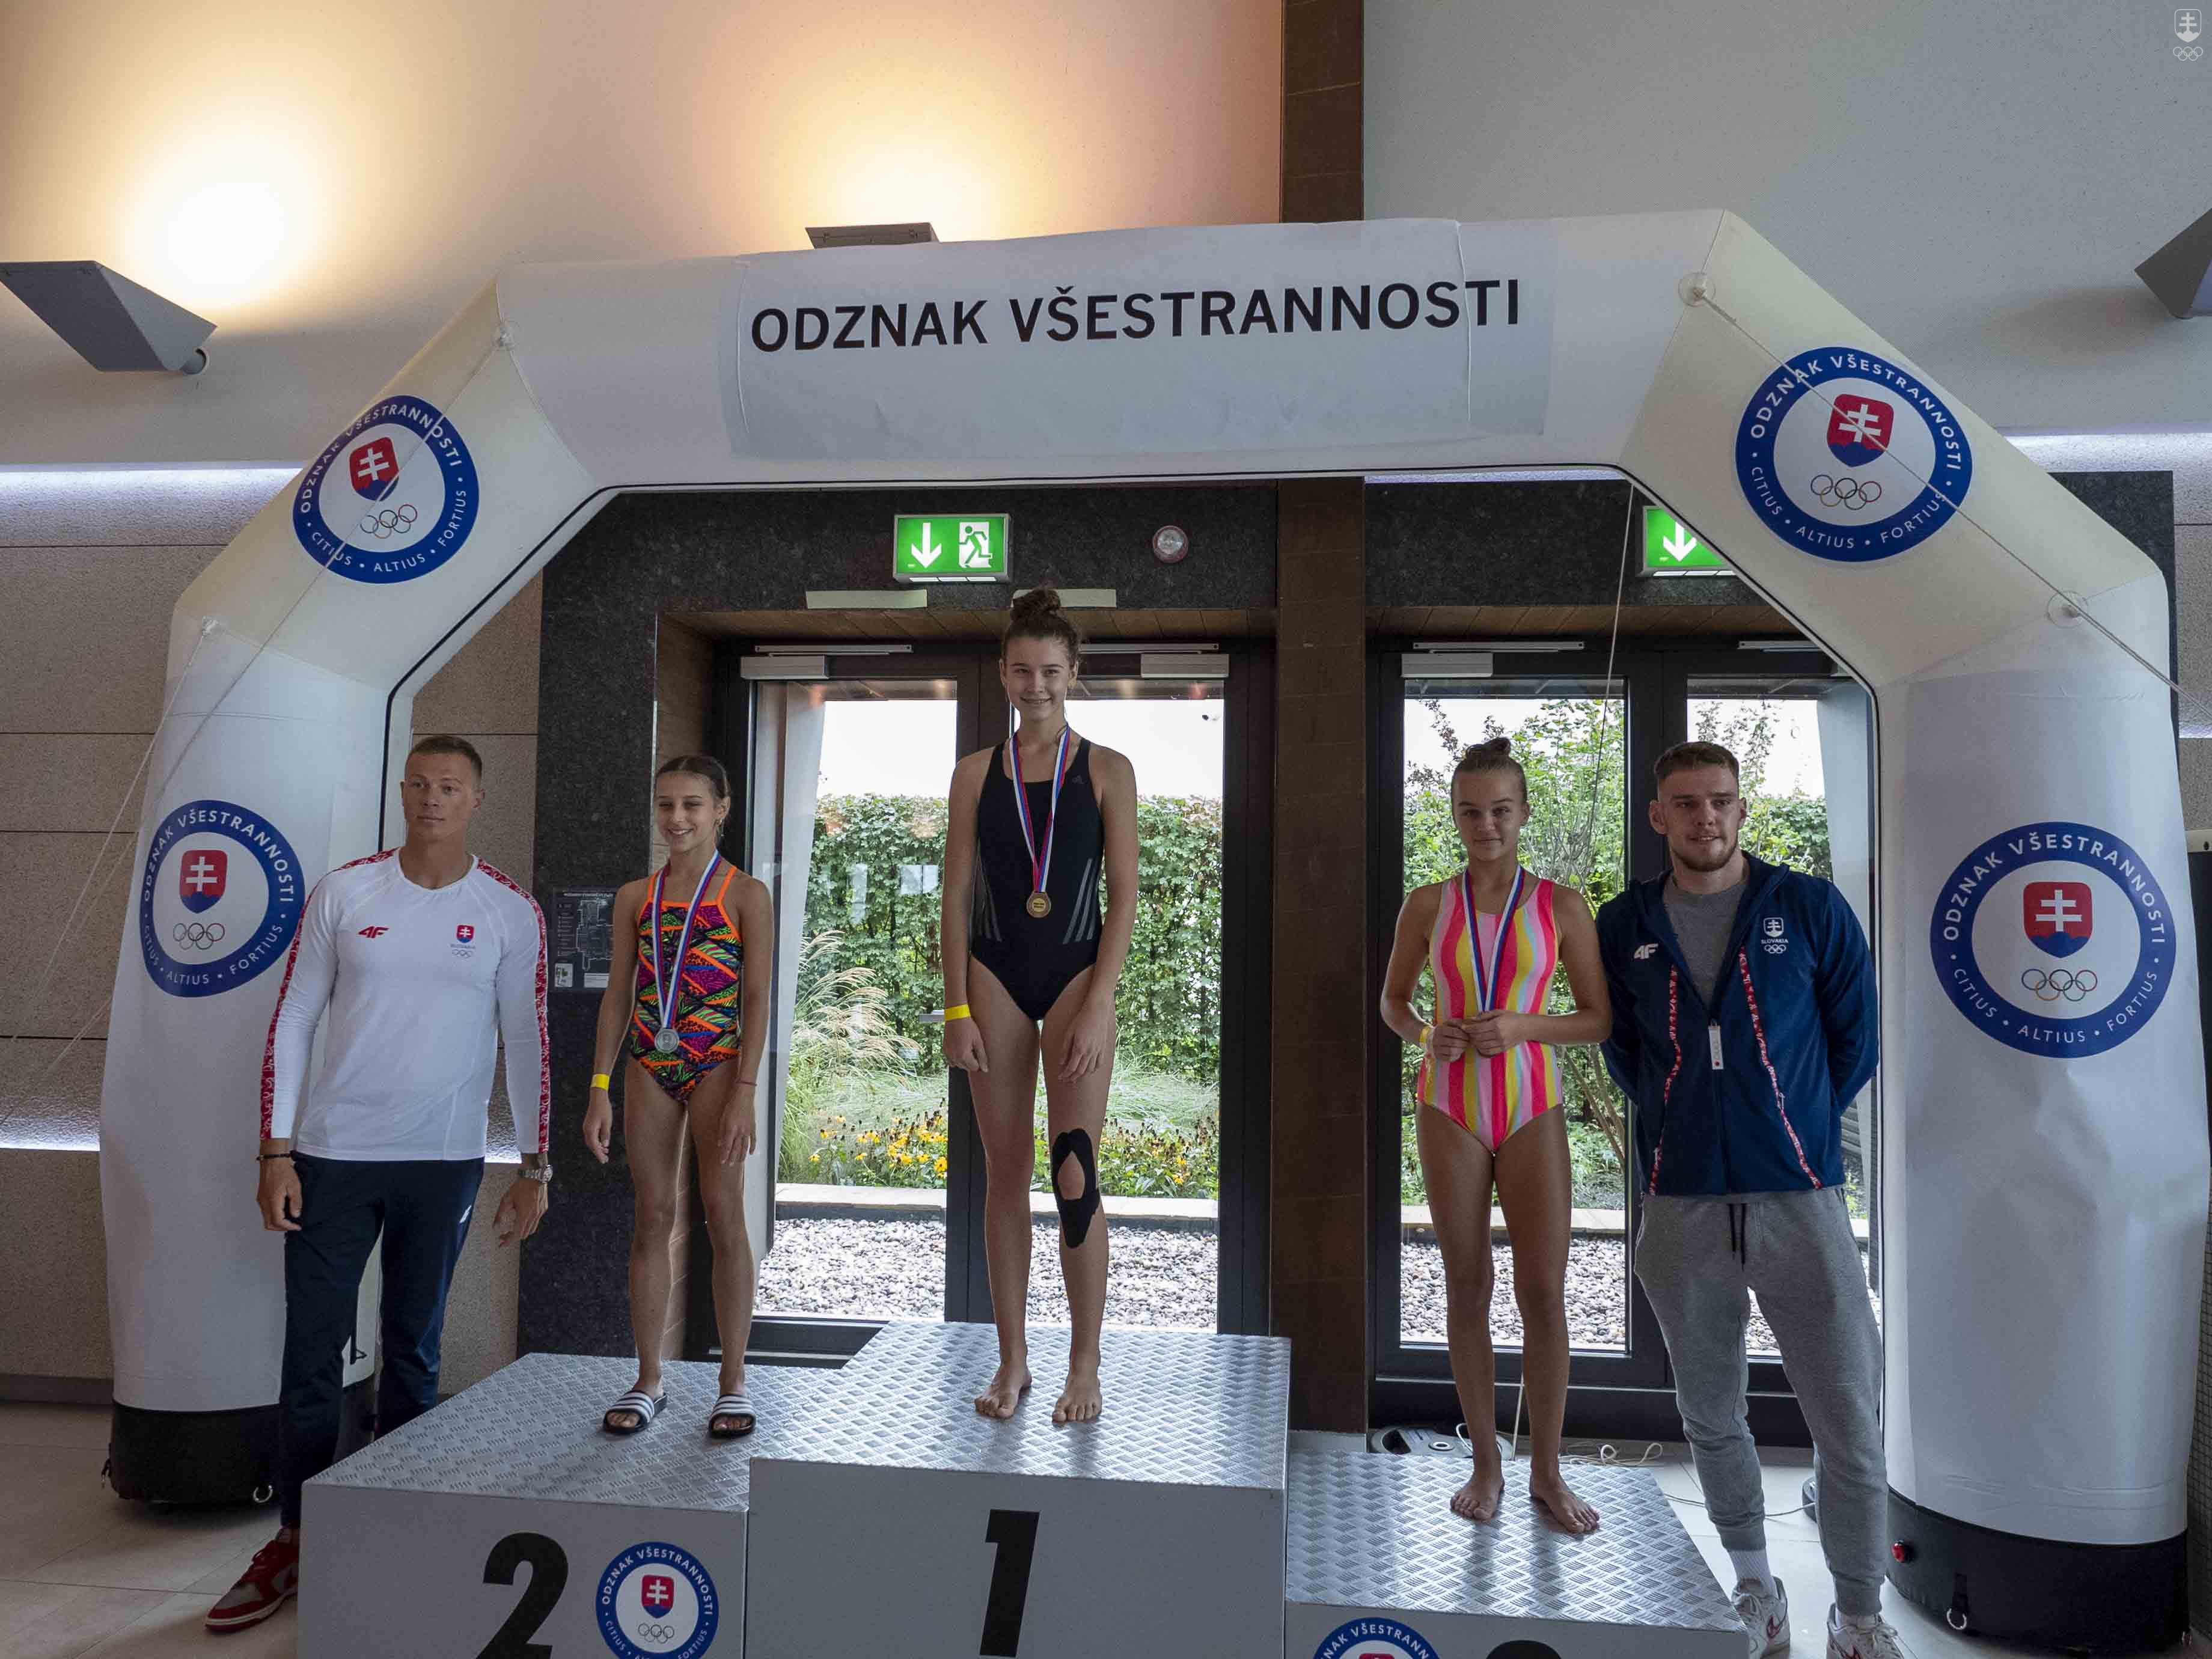 Csaba Zalka a Adam Botek prišli finalistov podporiť počas plaveckých disciplín.